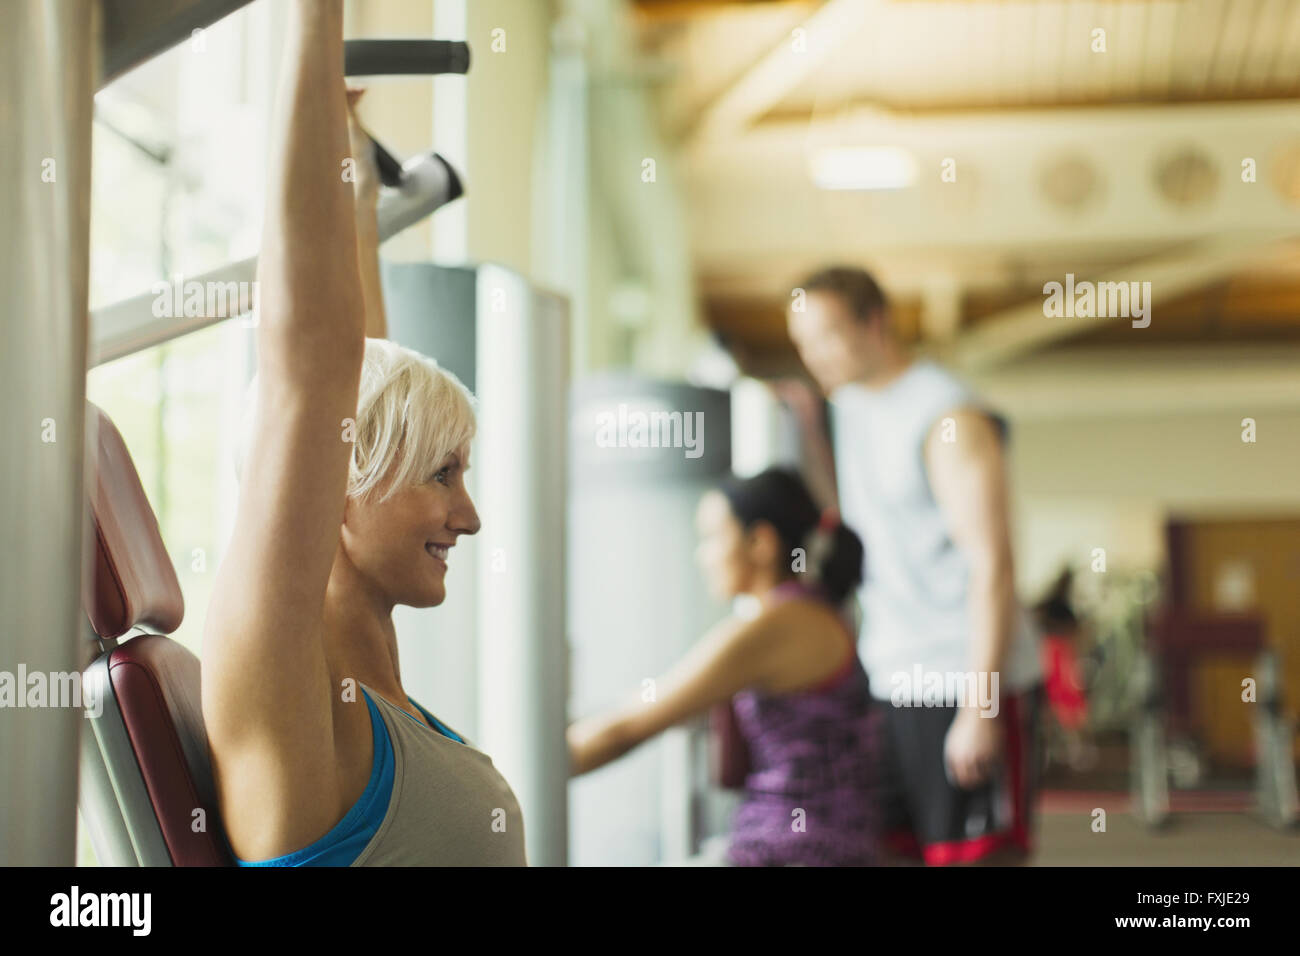 Mujer sonriente con los brazos levantados con equipo para hacer ejercicio en el gimnasio Foto de stock